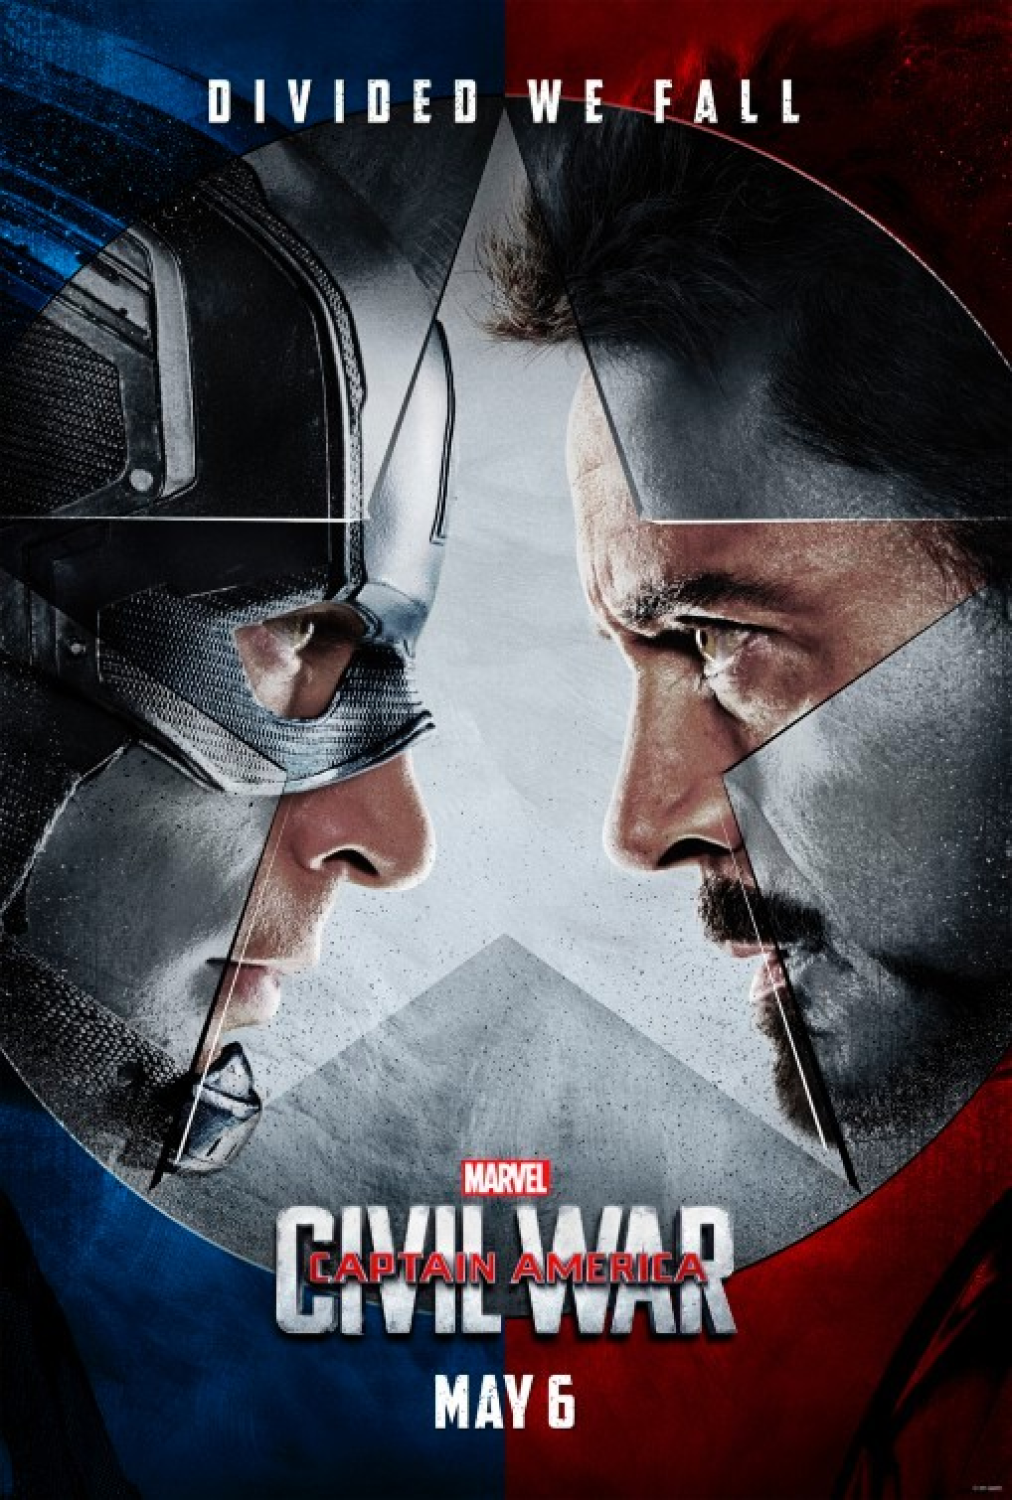 ดูหนัง Captain America 3 Civil War (2016) กัปตัน อเมริกา ศึกฮีโร่ระห่ำโลก ศึกระหว่างหัวหน้าทีมอย่างไอรอนแมน และ กัปตันอเมริกา งานนี้แผ่นดินต้องลุกเป็นไฟ